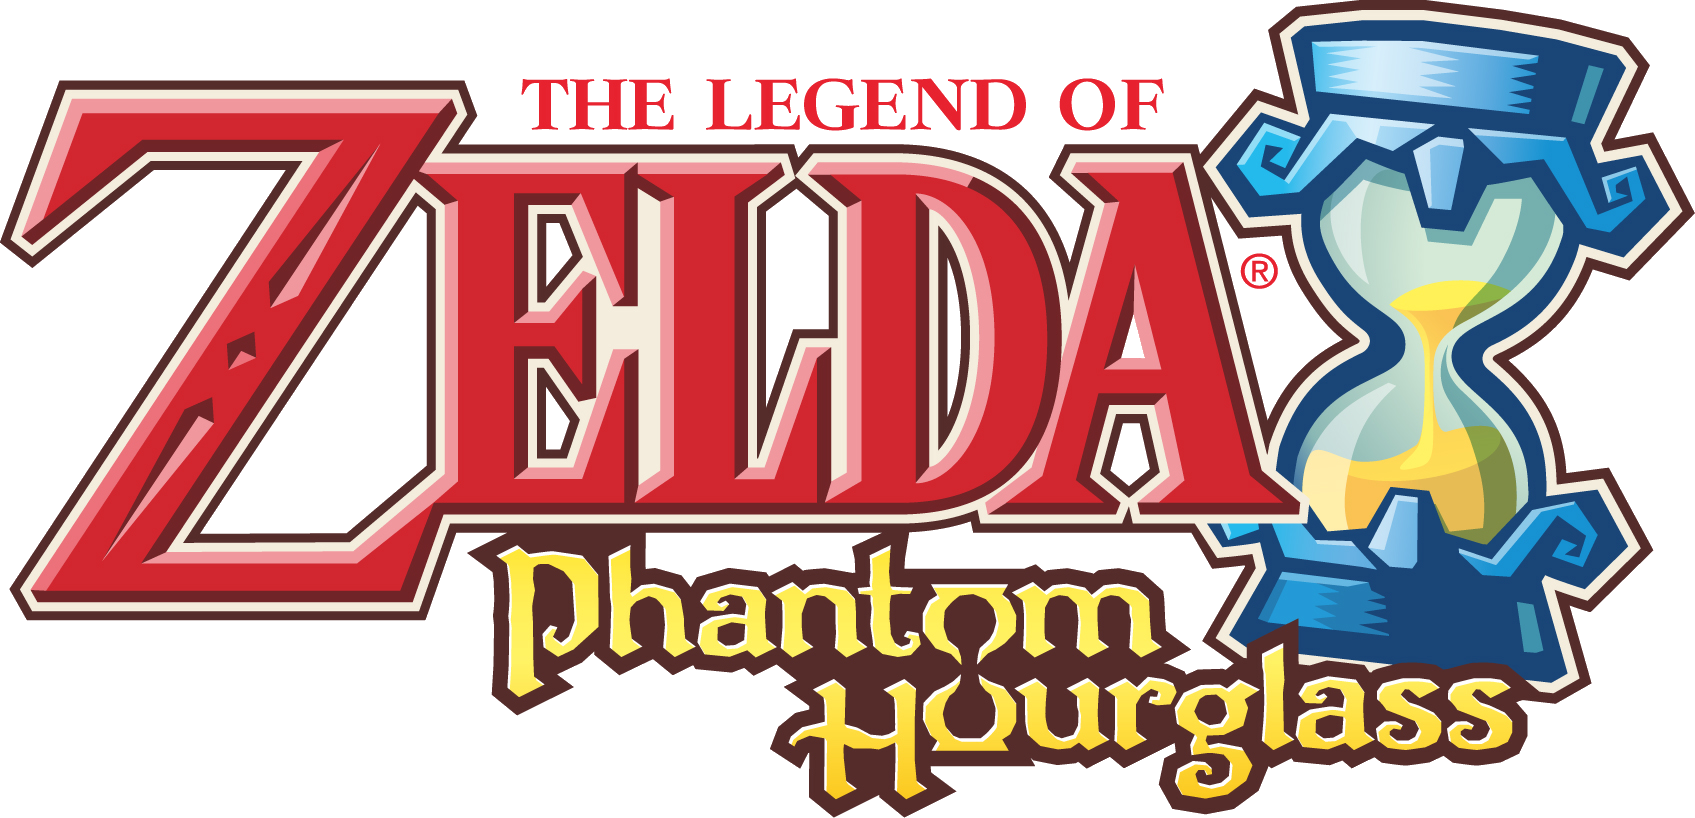 Alérgico pedestal canal The Legend of Zelda: Phantom Hourglass | The Legend of Zelda Wiki | Fandom